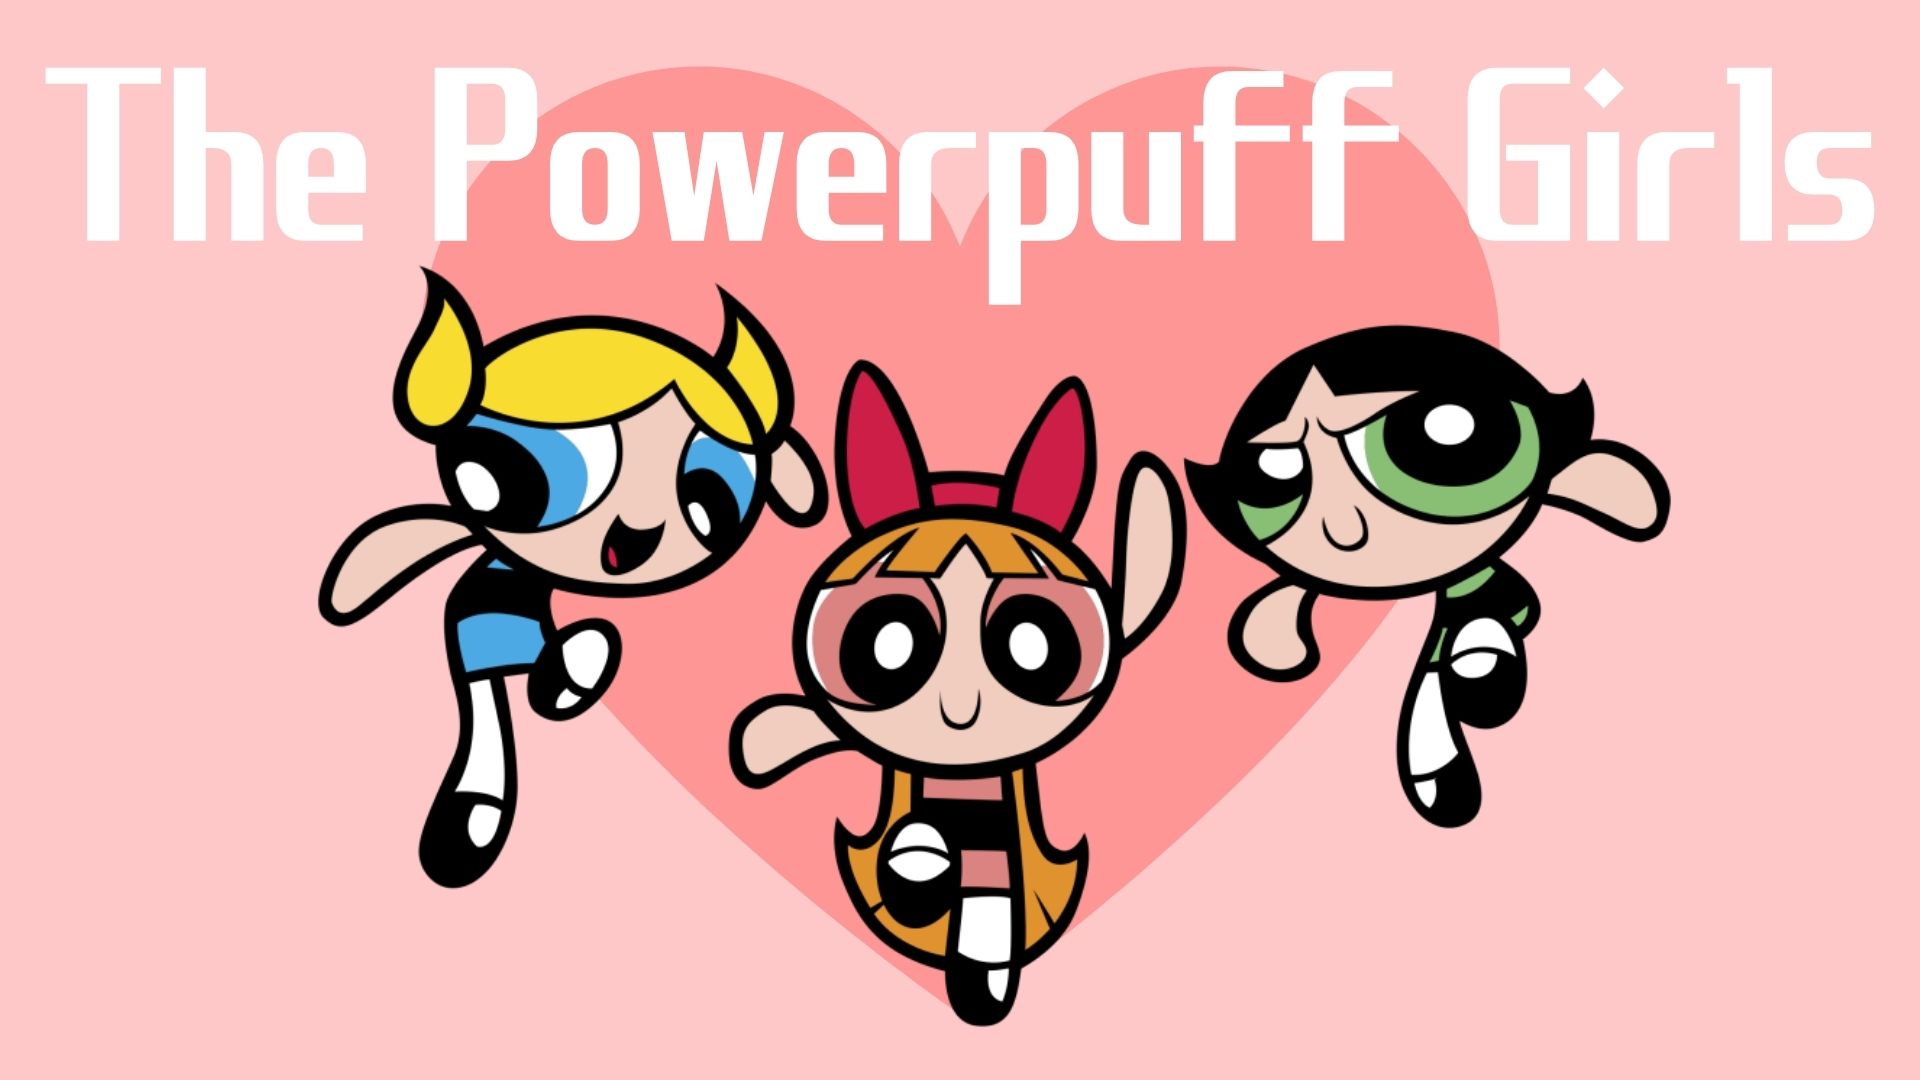 パワーパフガールズのパワーパフってどういう意味？、パワーパフガールズ、powerpuff girls、意味、由来、アイキャッチ画像。バブルス、ブロッサム、バターカップの画像。